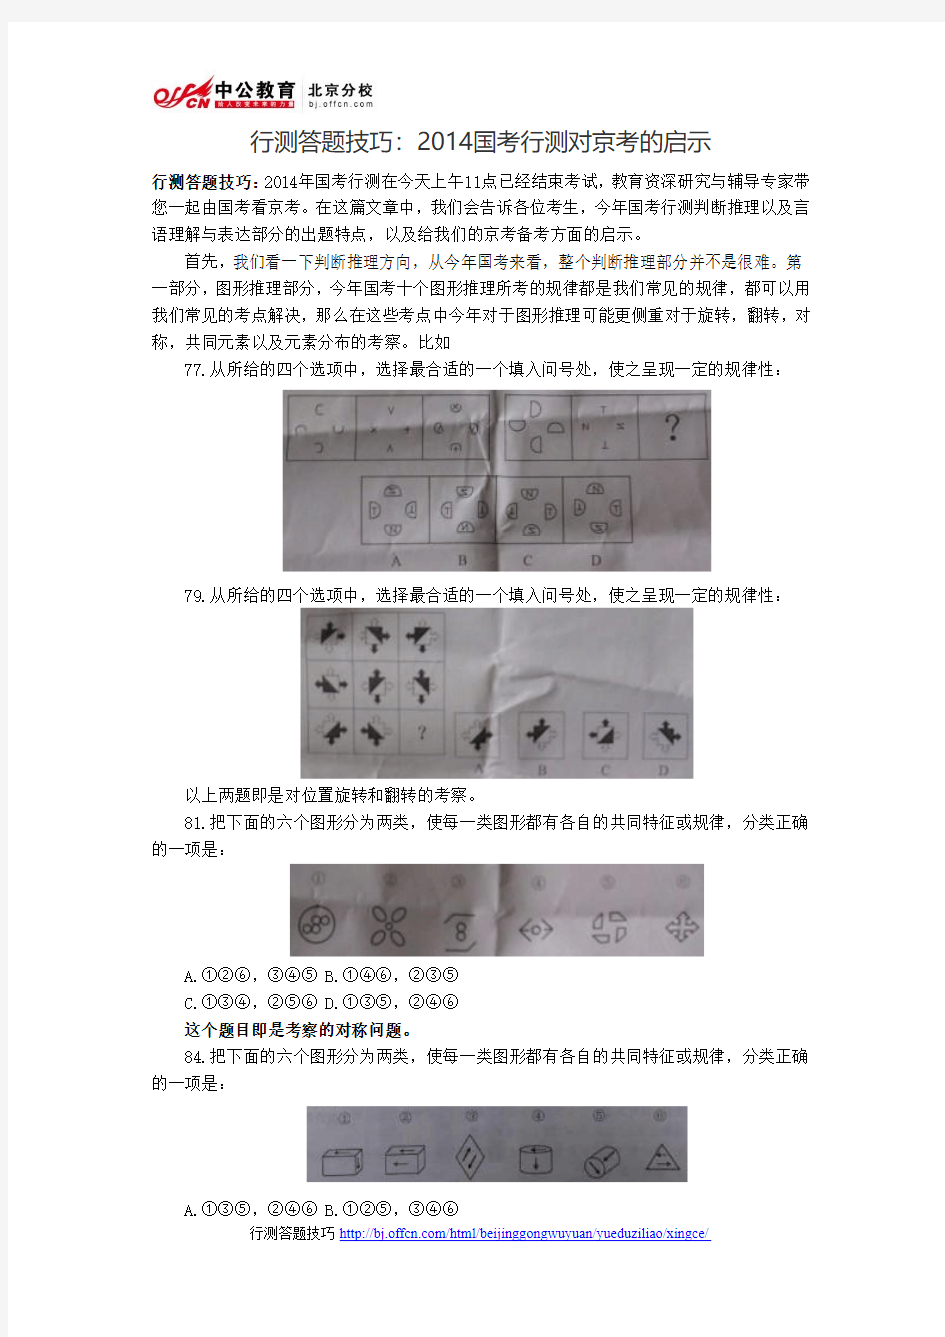 2014年北京公务员考试行测答题技巧：2014国考行测对京考的启示